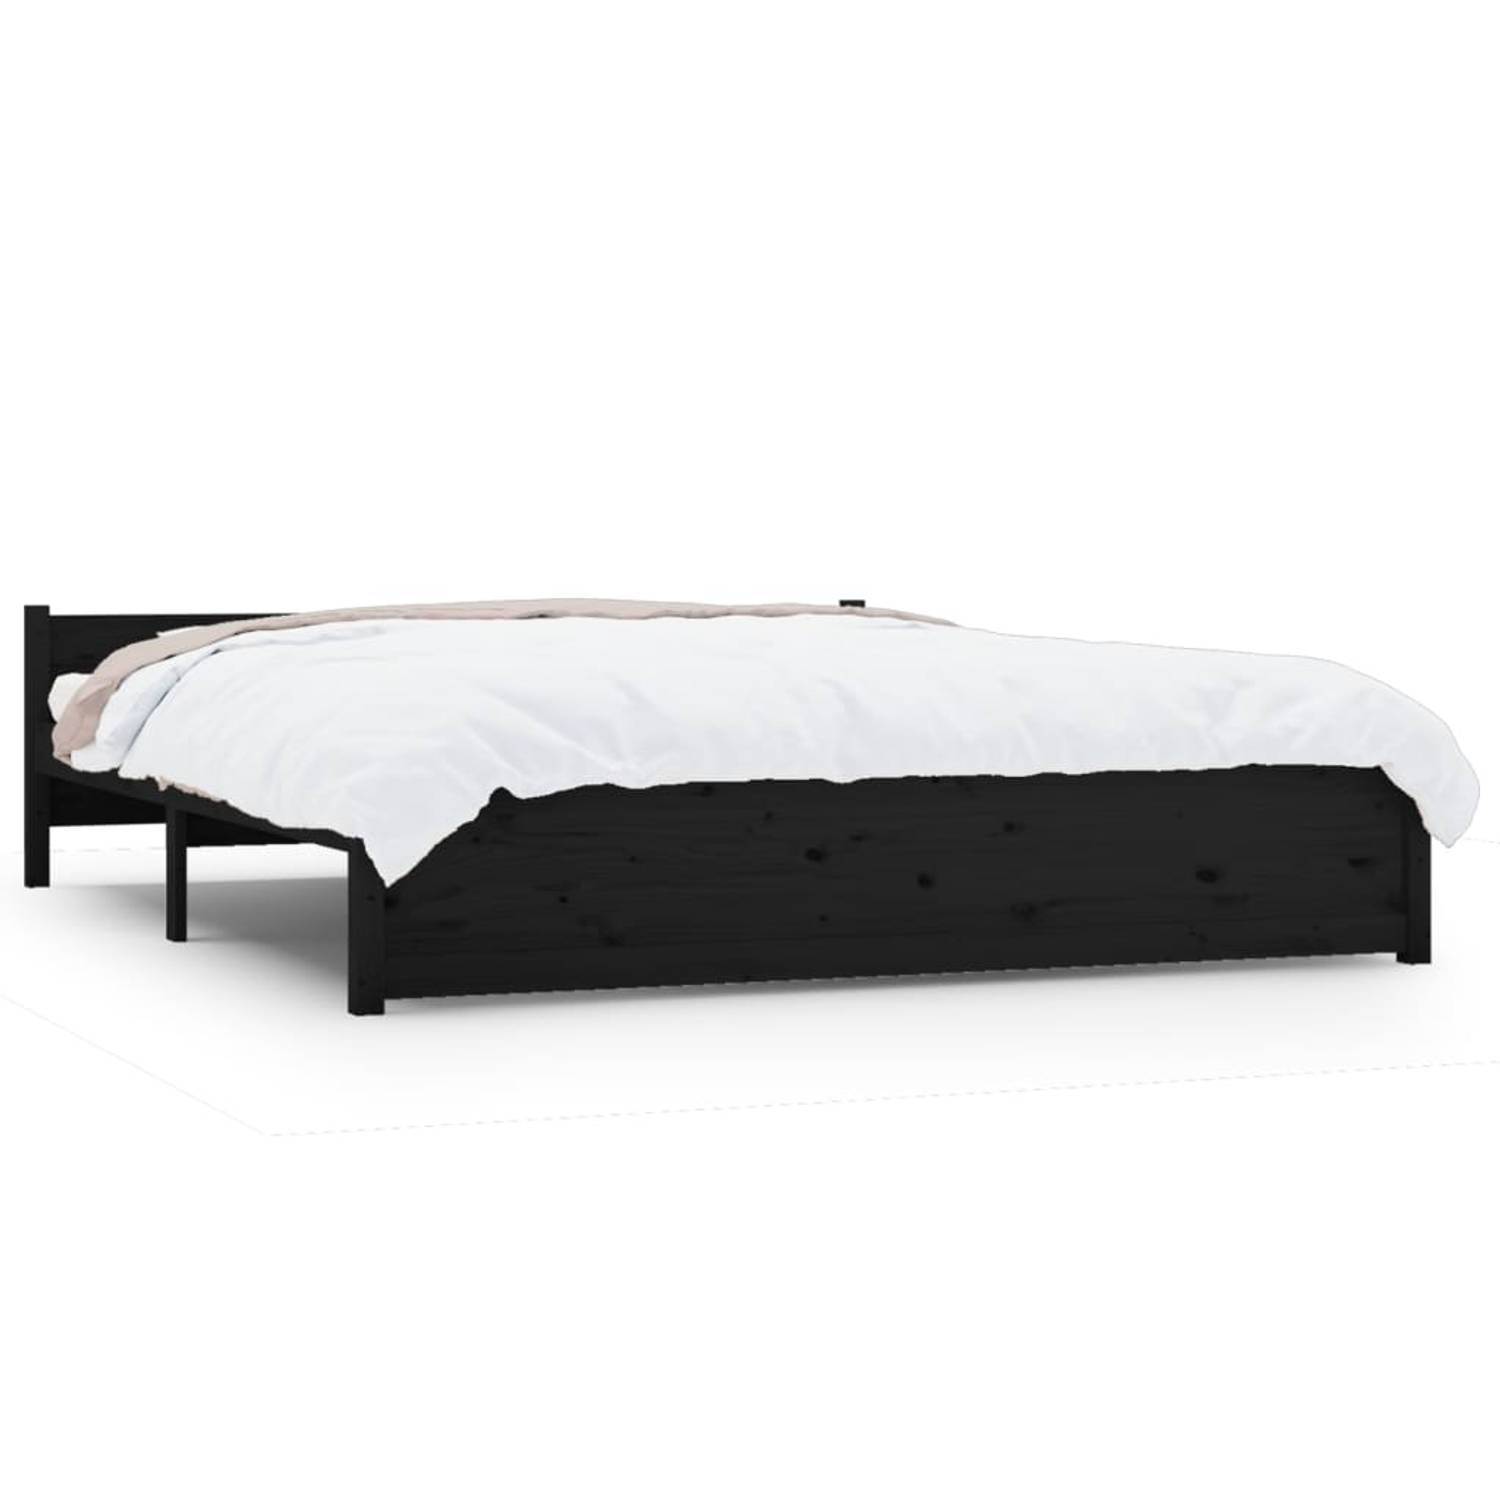 The Living Store Bedframe massief hout zwart 200x200 cm - Bedframe - Bedframes - Bed - Bedbodem - Ledikant - Bed Frame - Massief Houten Bedframe - Slaapmeubel - Tweepersoonsbed - B